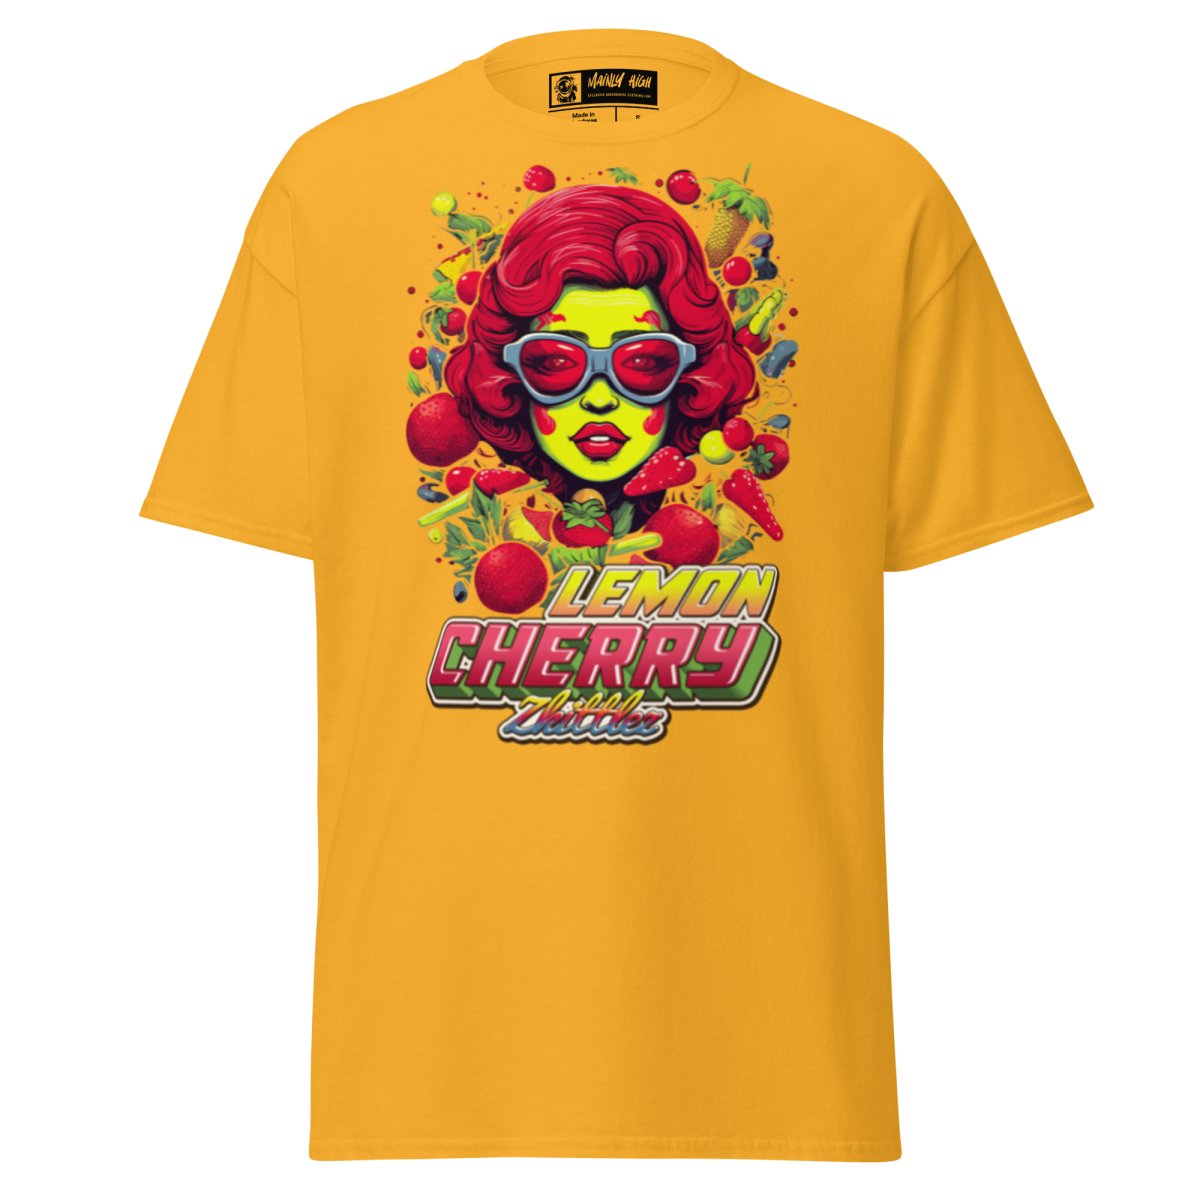 Lemon Cherry Zkittlez T-Shirt - Mainly High